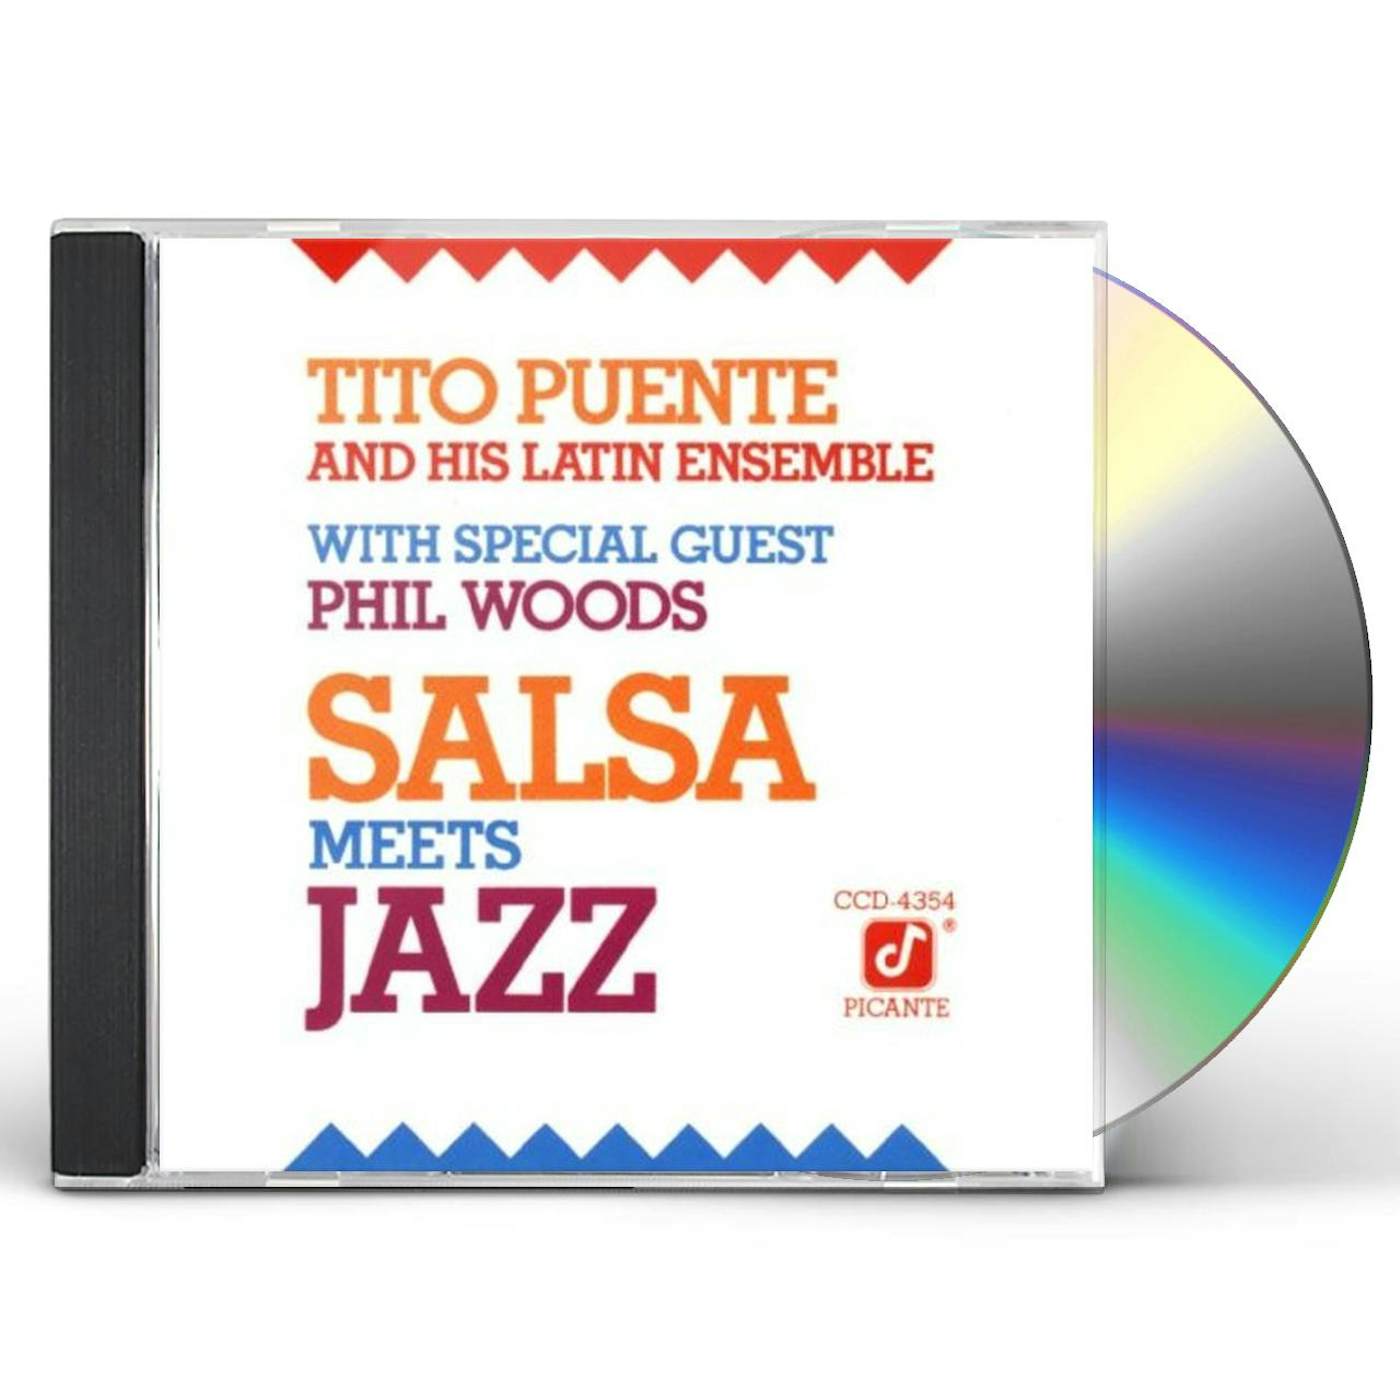 Tito Puente SALSA MEETS JAZZ CD